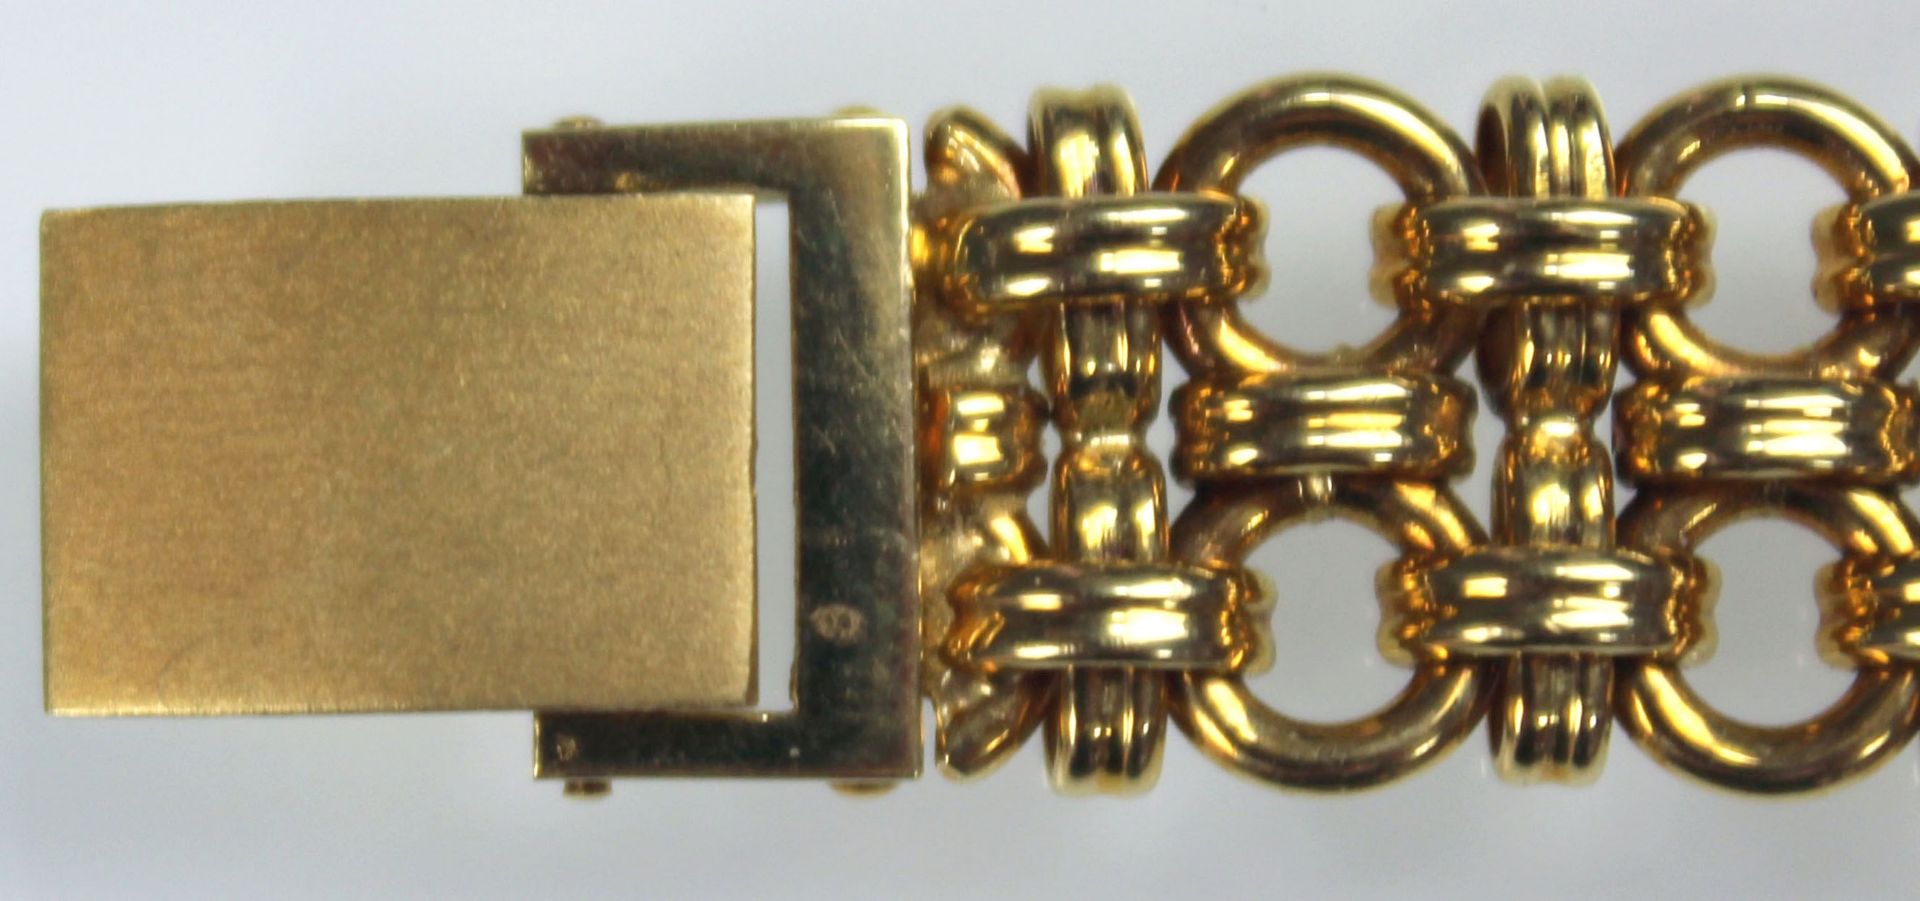 Schmuck Armbanduhr Gelb Gold 750, besetzt mit 36 kleinen Brillanten.58,5 Gramm Gesamtgewicht. - Bild 7 aus 11